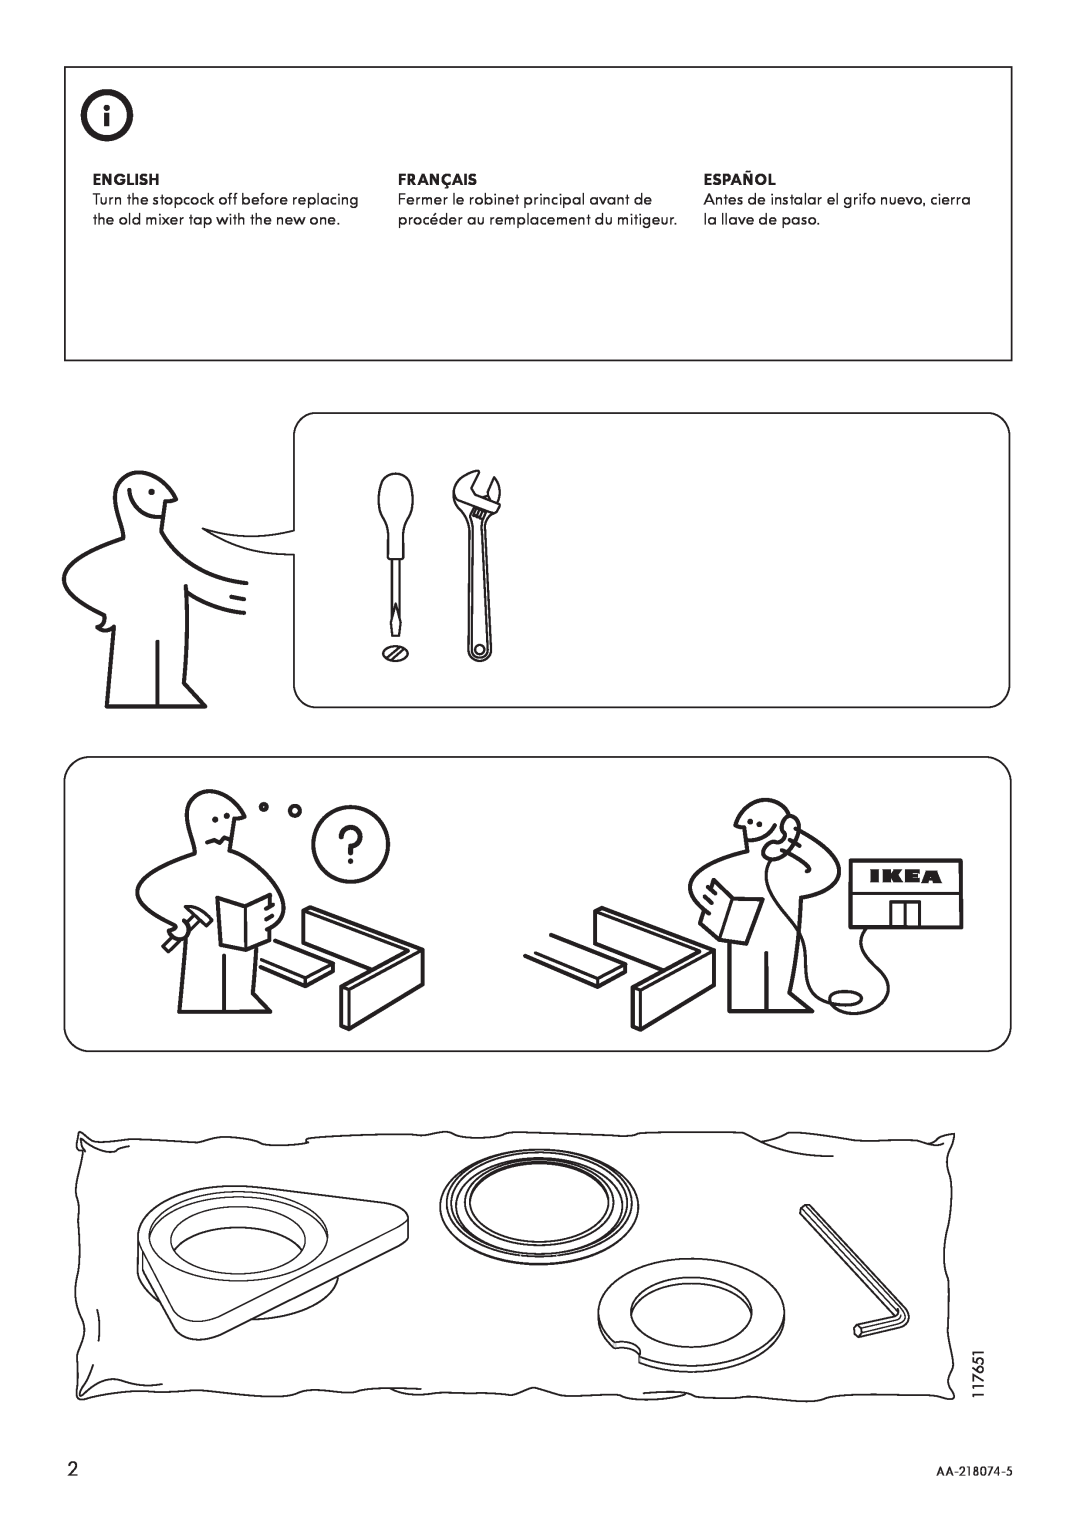 IKEA AA-218074-5 manual English, Français, Español 